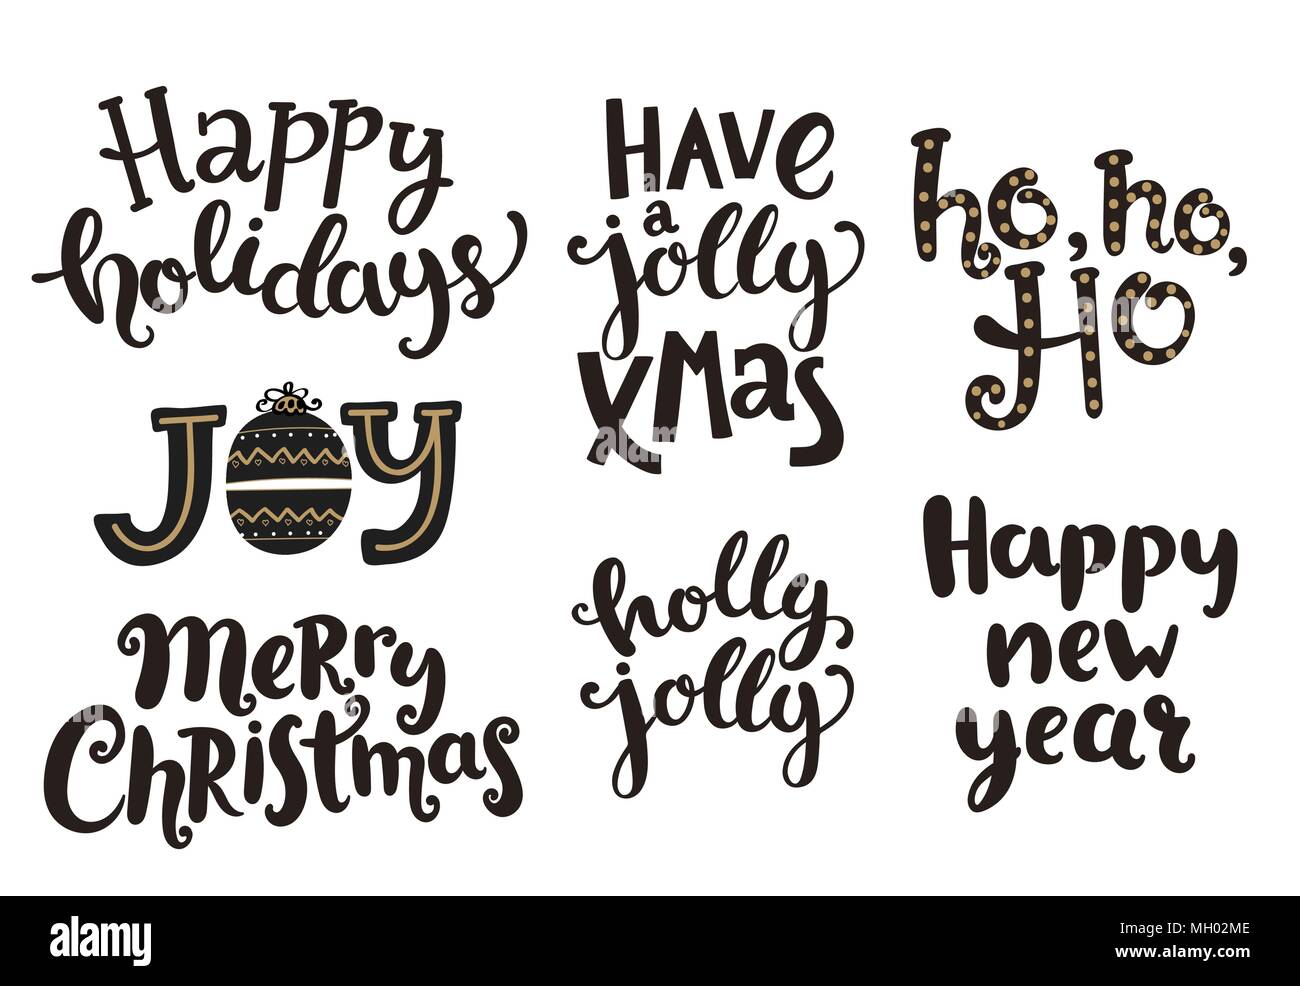 Frasi Natale E Capodanno.Vacanze Scritte Frasi Per Capodanno E Natale Illustrazione Vettoriale Immagine E Vettoriale Alamy